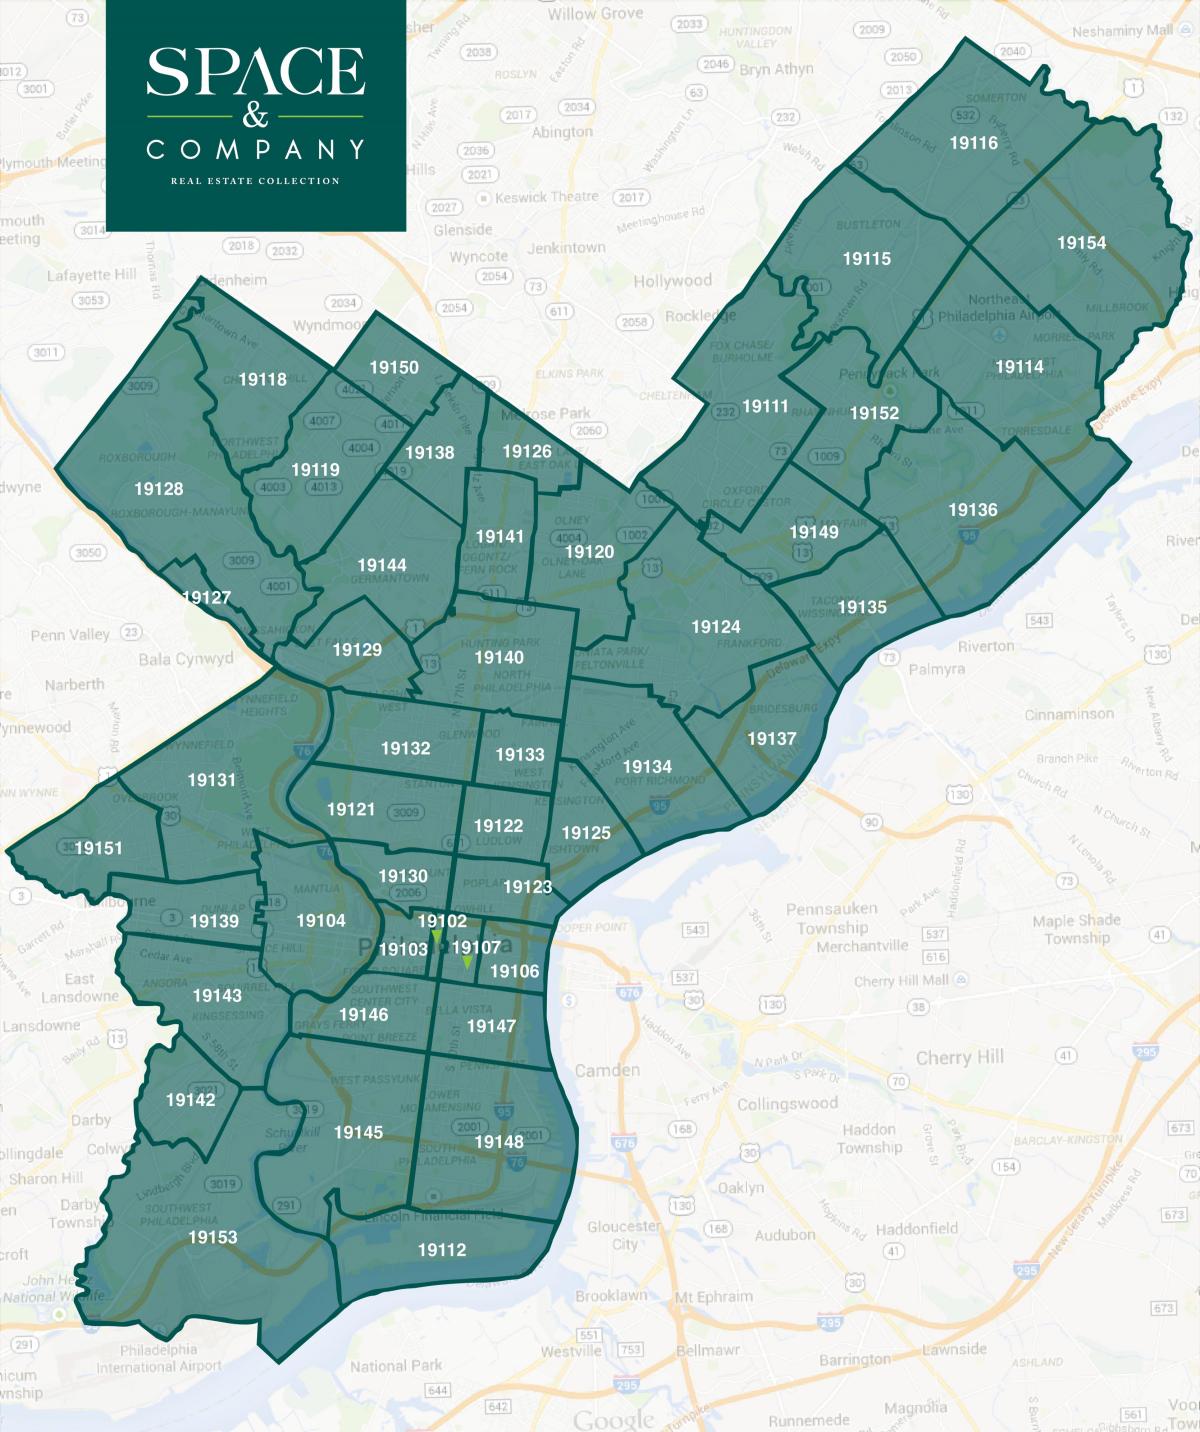 ЗИП код на карте в Филадельфию